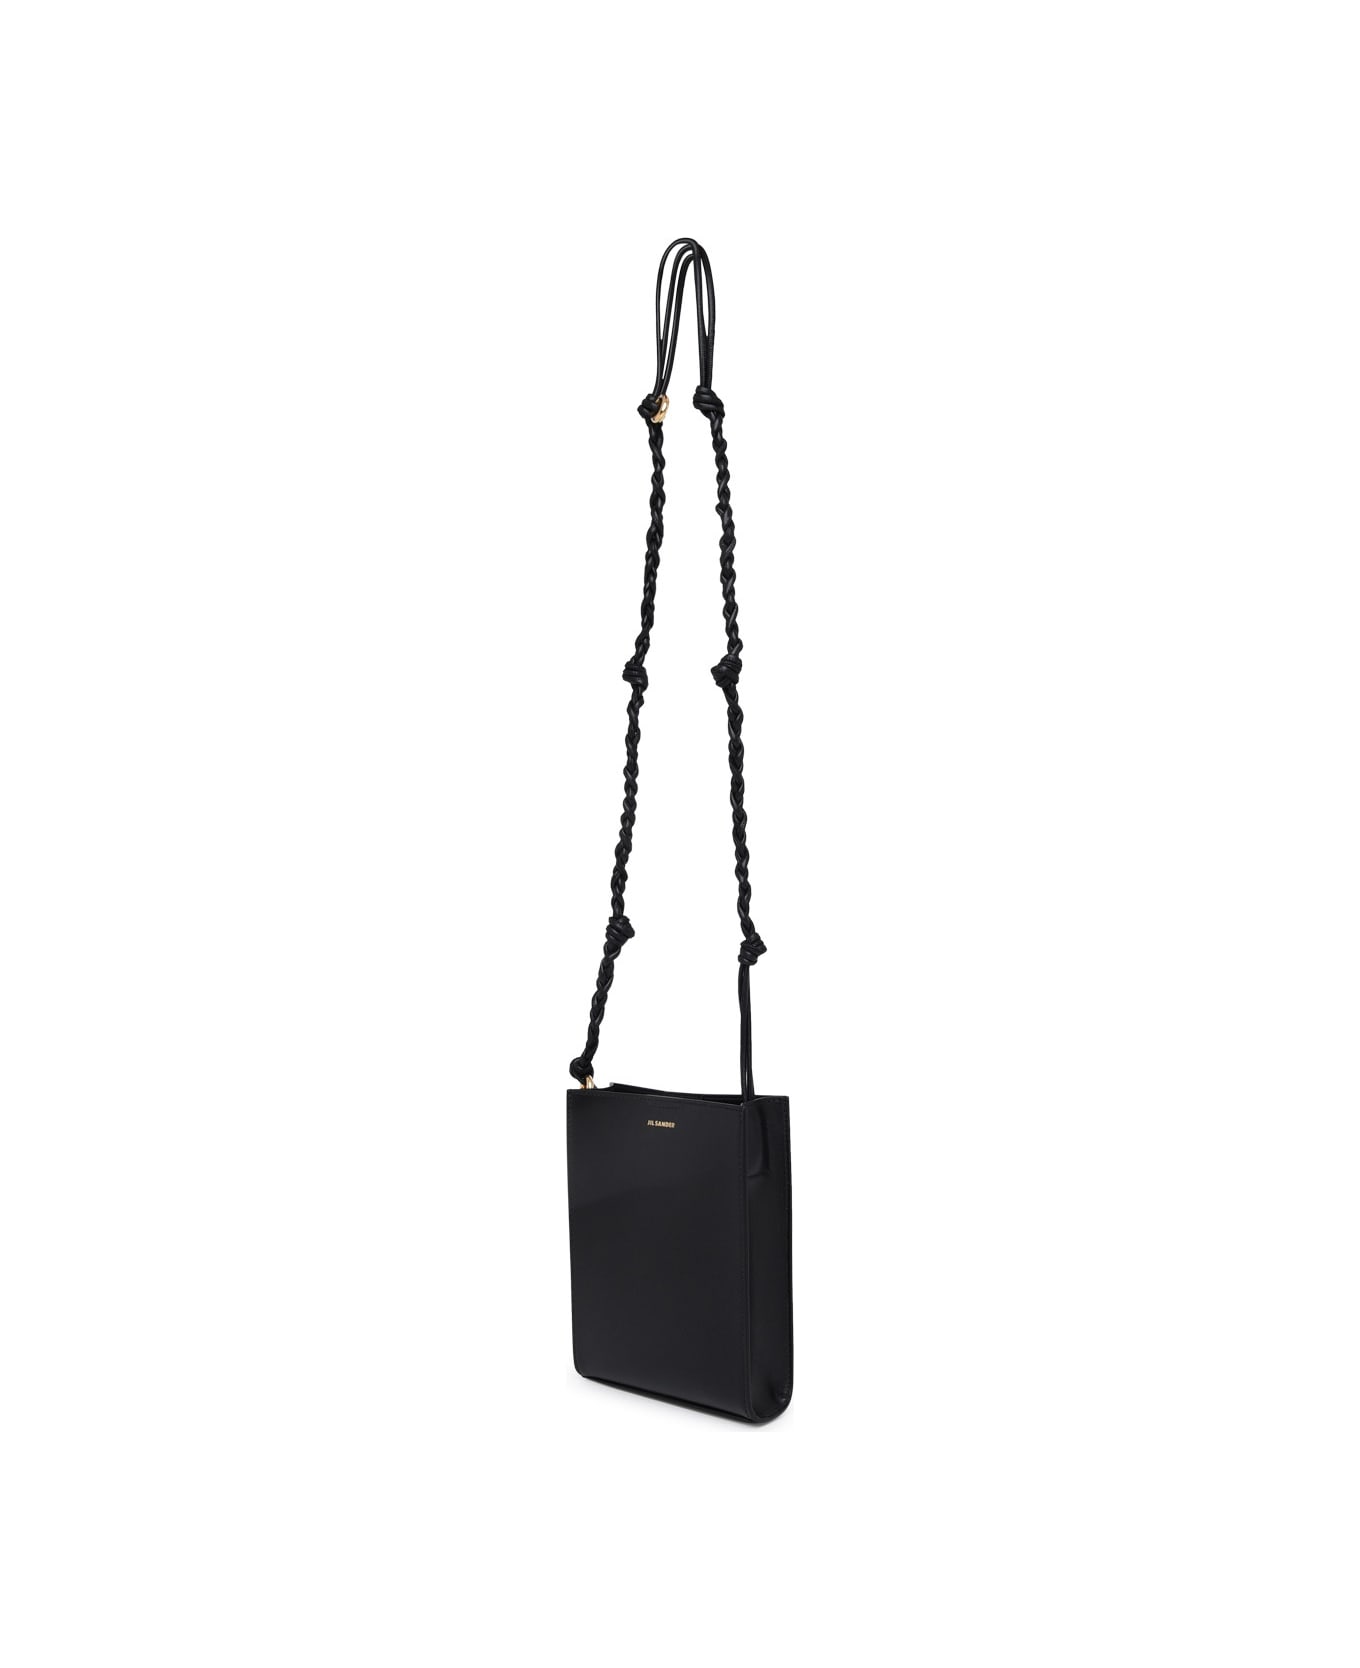 Jil Sander Tangle Ring Crossbody Bag In Black Leather - Nero